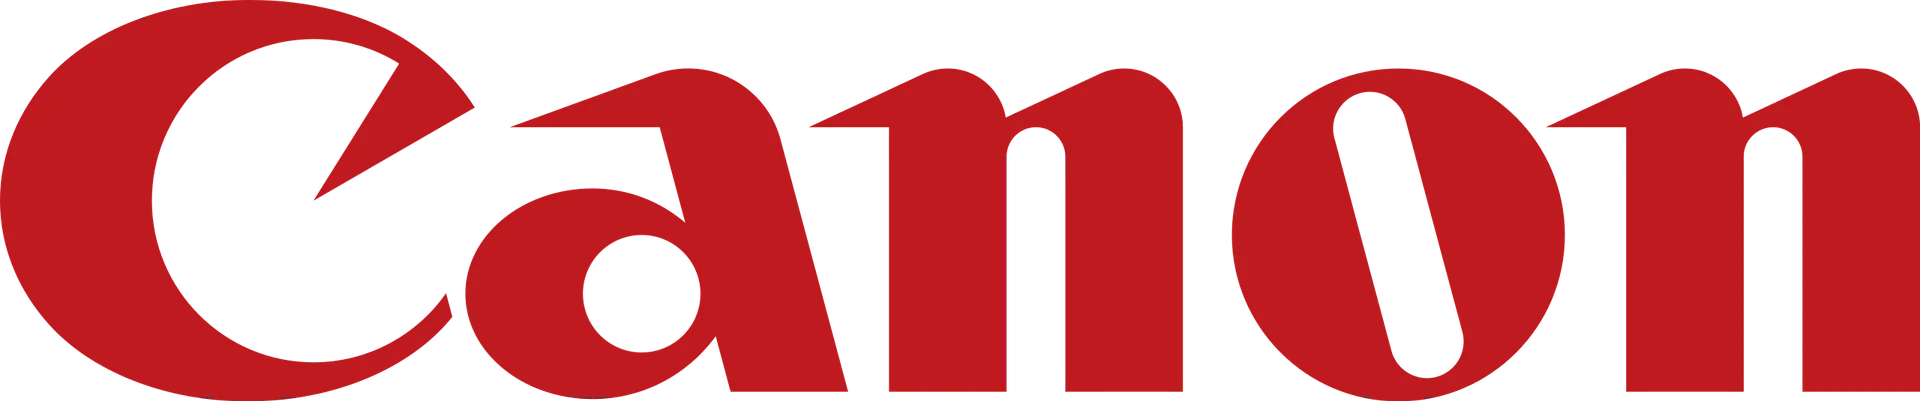 CANON logo die aktuell Flugblatt